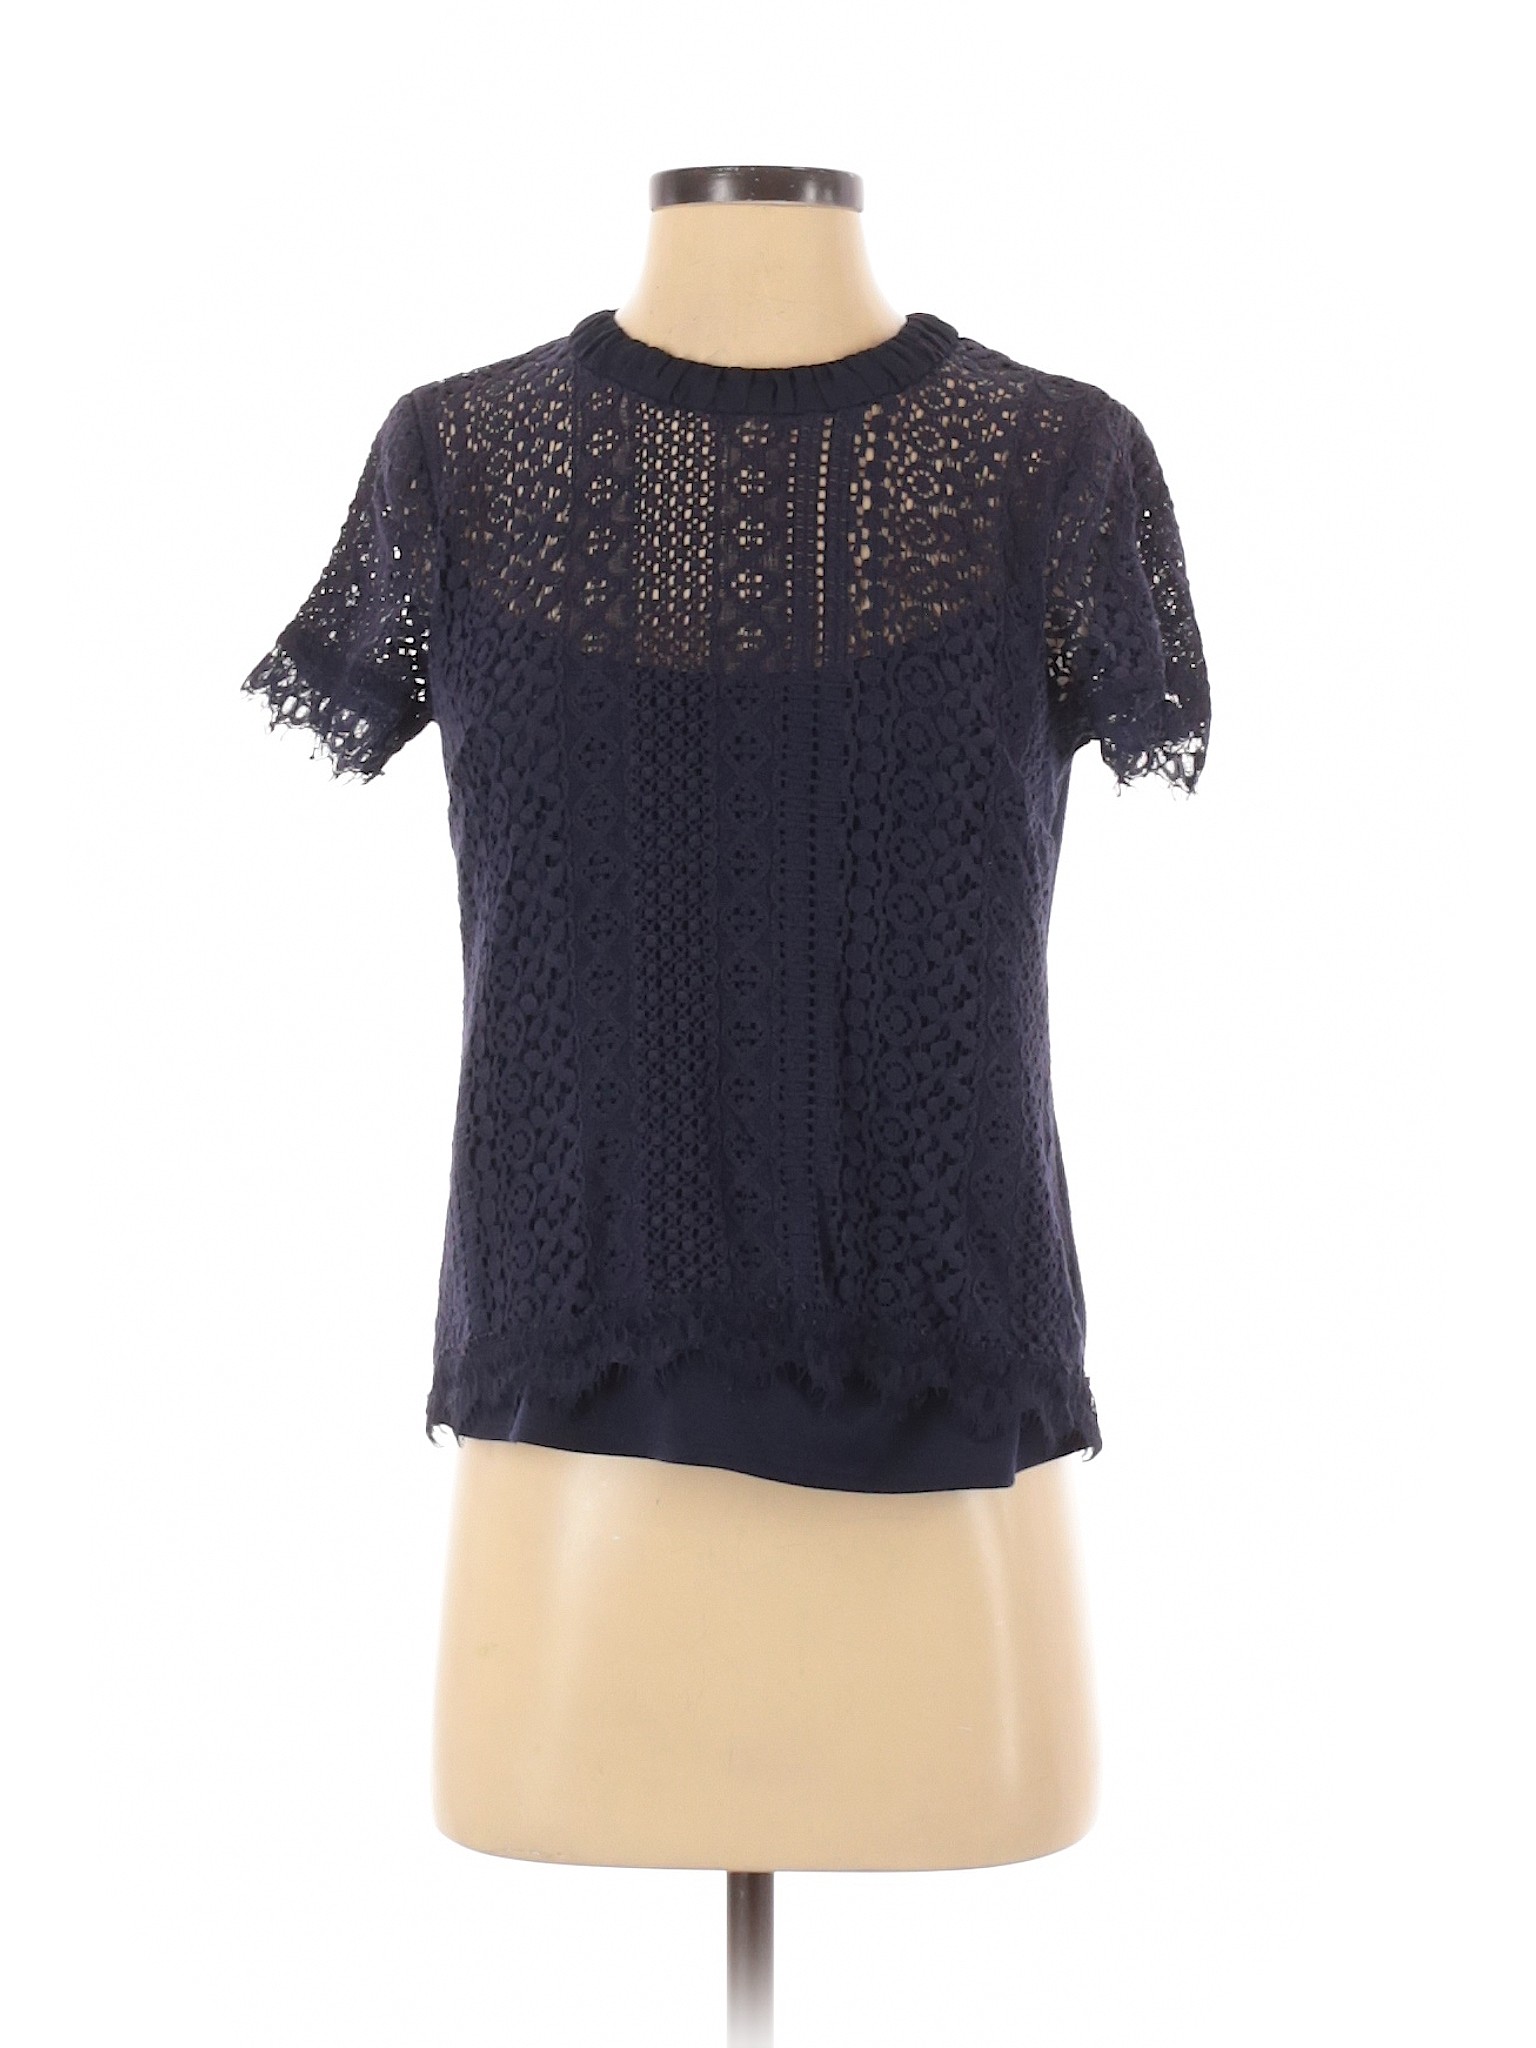 LC Lauren Conrad Women Blue Short Sleeve Top S | eBay